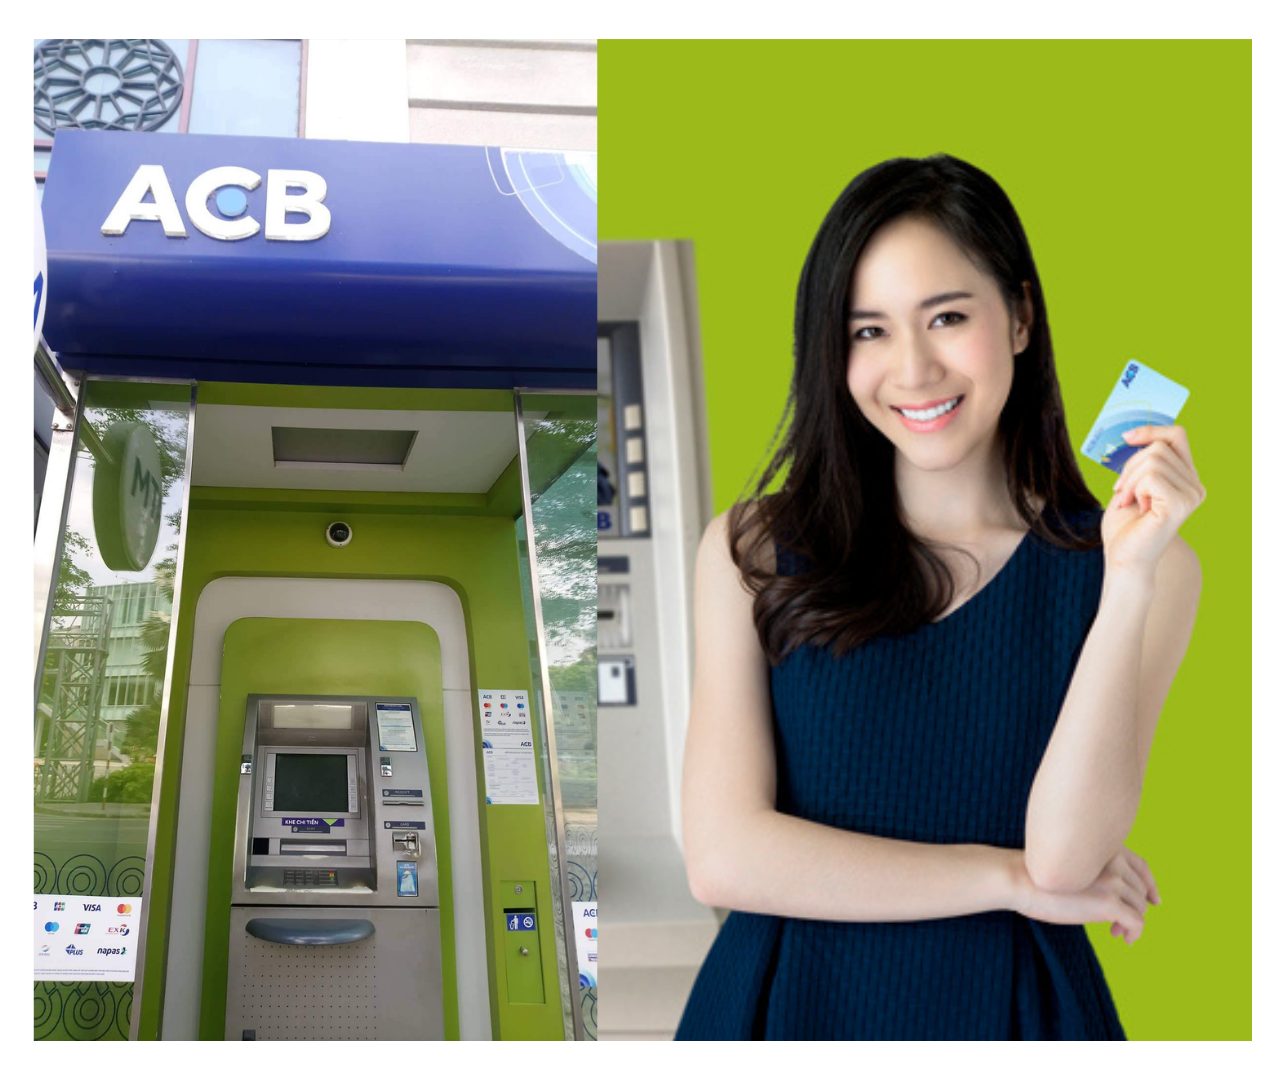 Cây atm Phan Rang: Danh sách trụ cây ATM tại Phan Rang Ninh Thuận